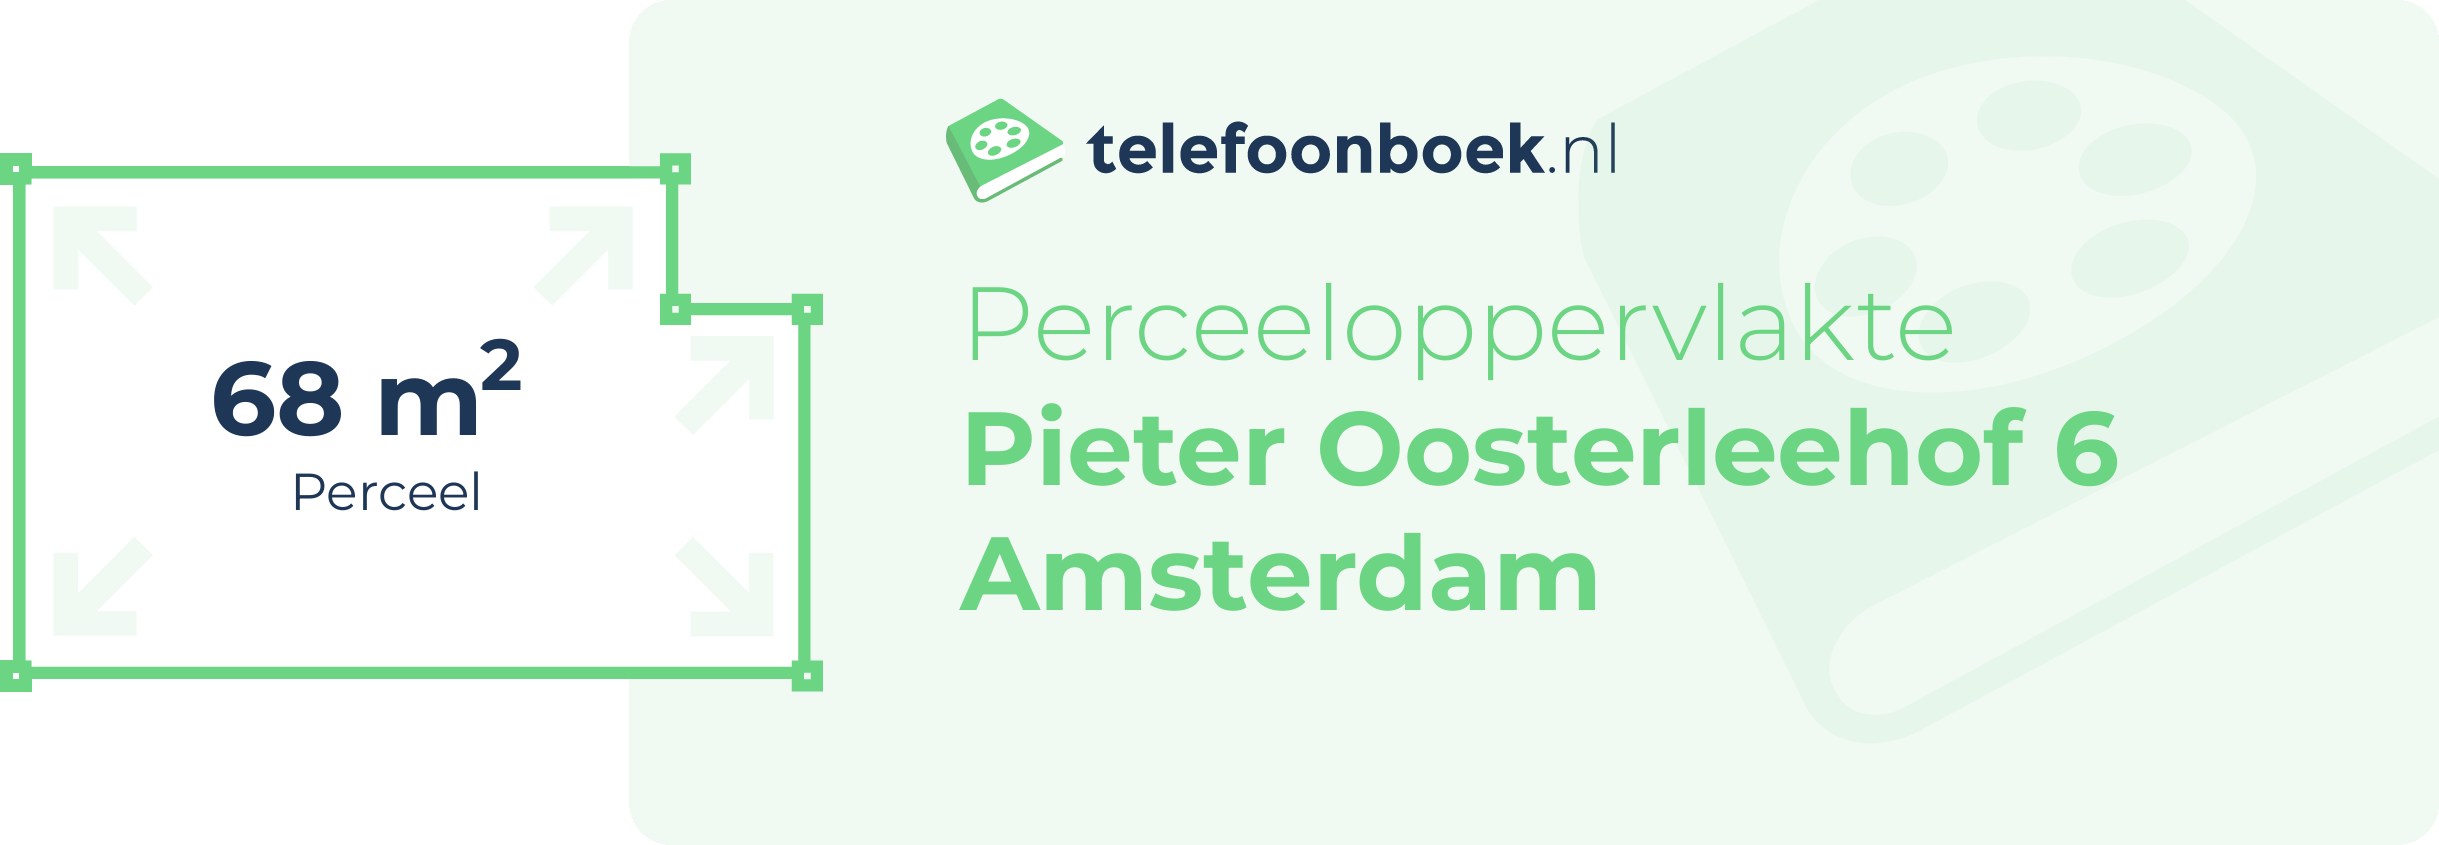 Perceeloppervlakte Pieter Oosterleehof 6 Amsterdam